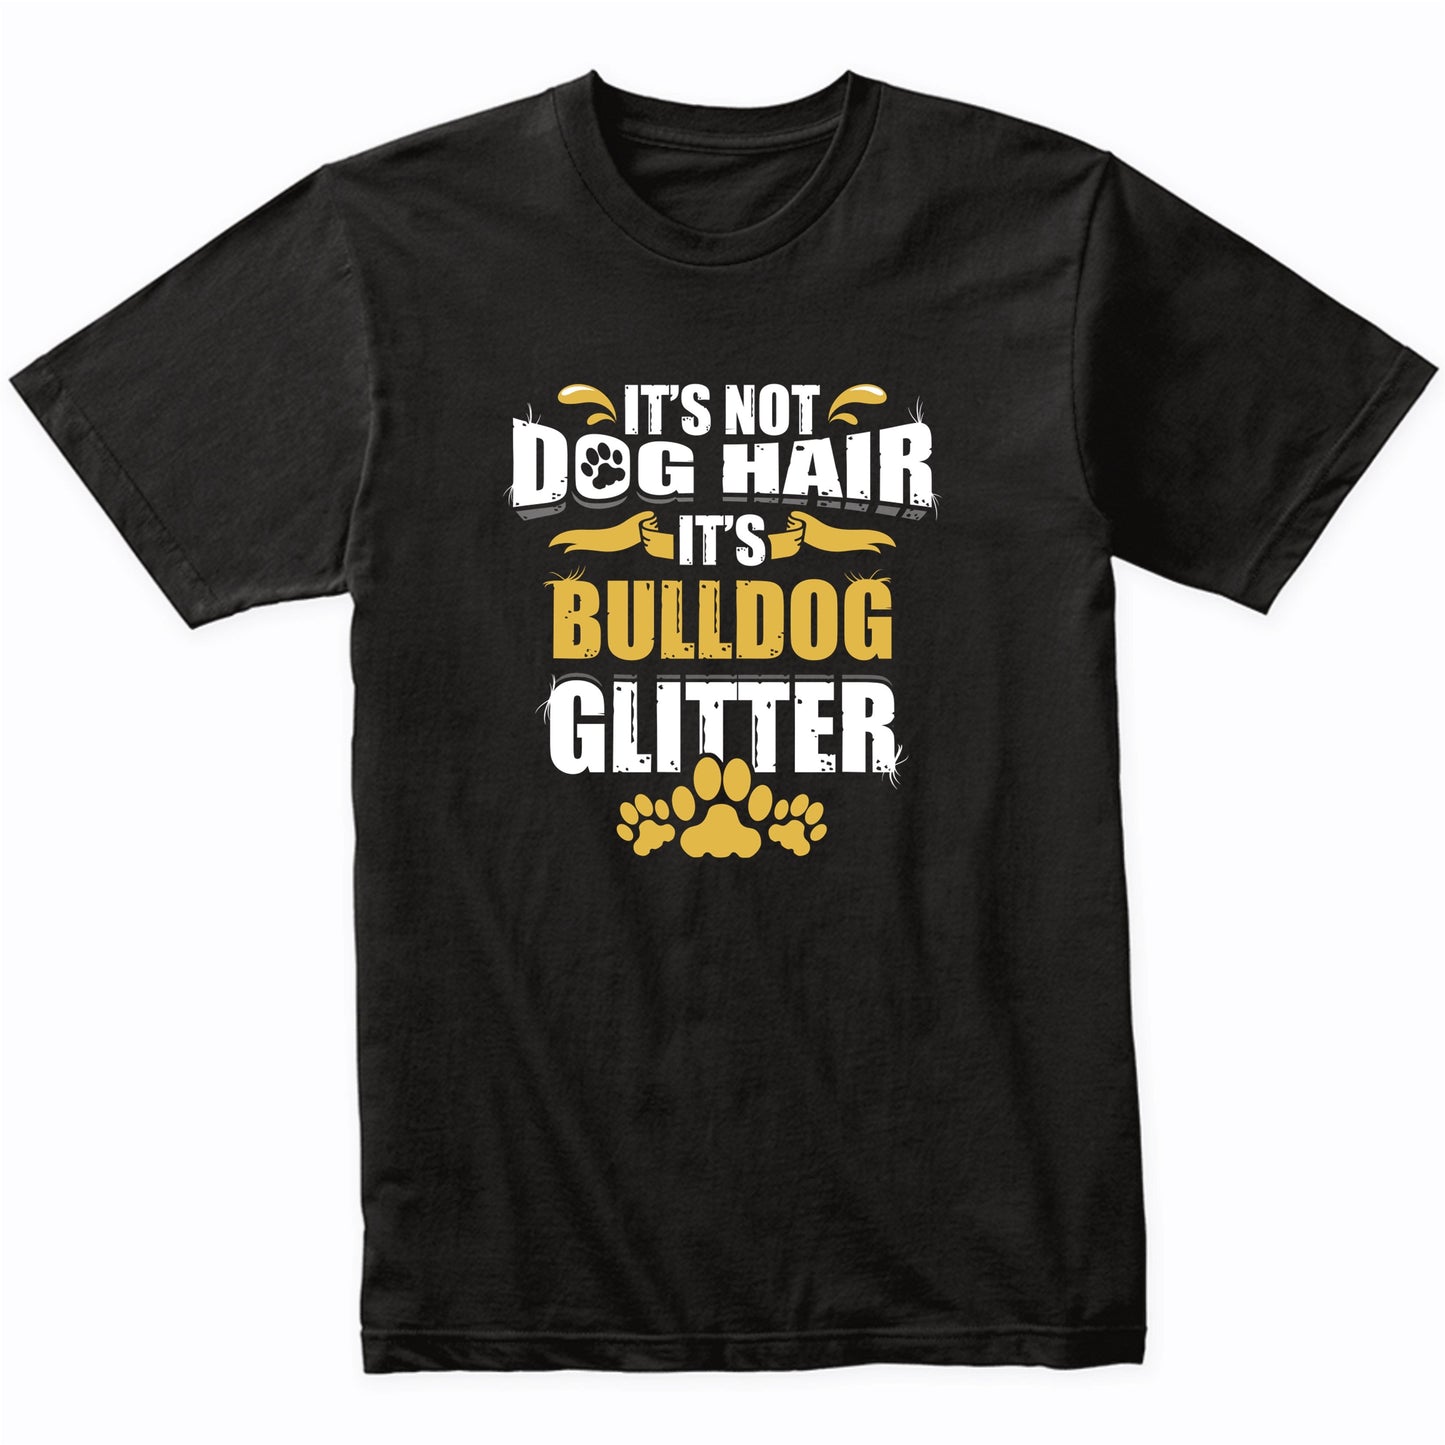 It's Not Dog Hair It's Bulldog Glitter T-Shirt